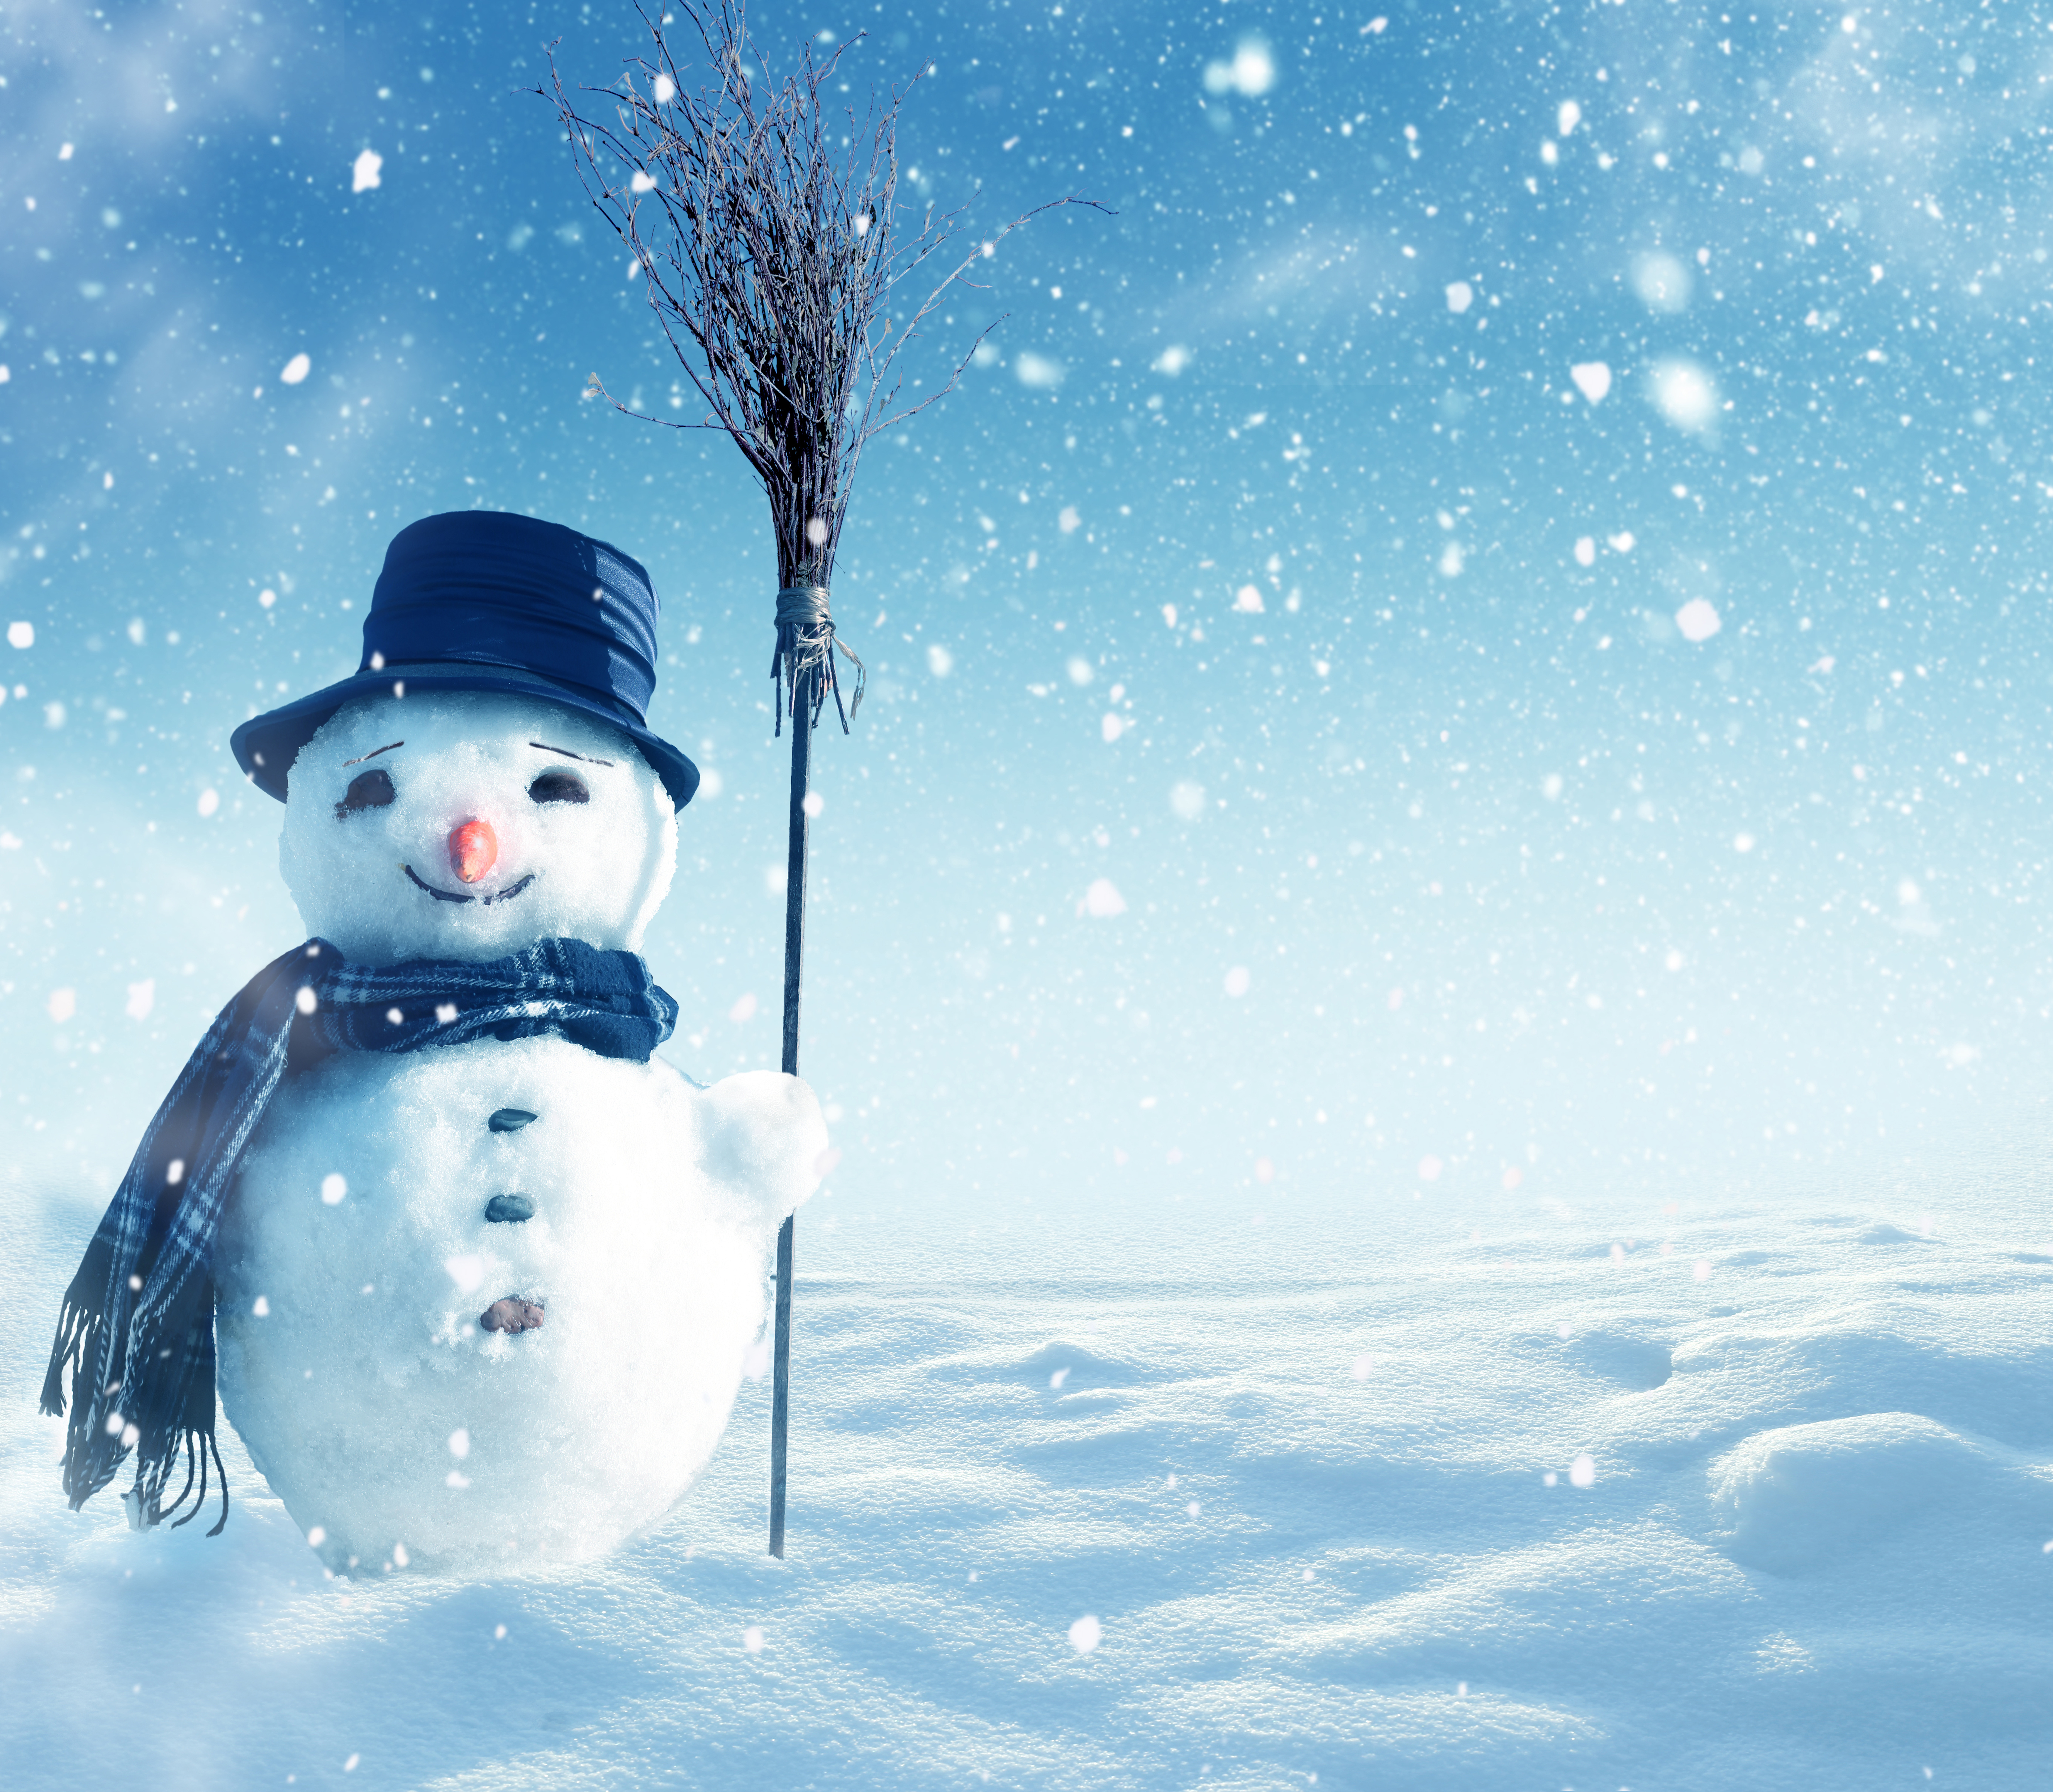 Скачать картинку Снеговик, Фотографии в телефон бесплатно.